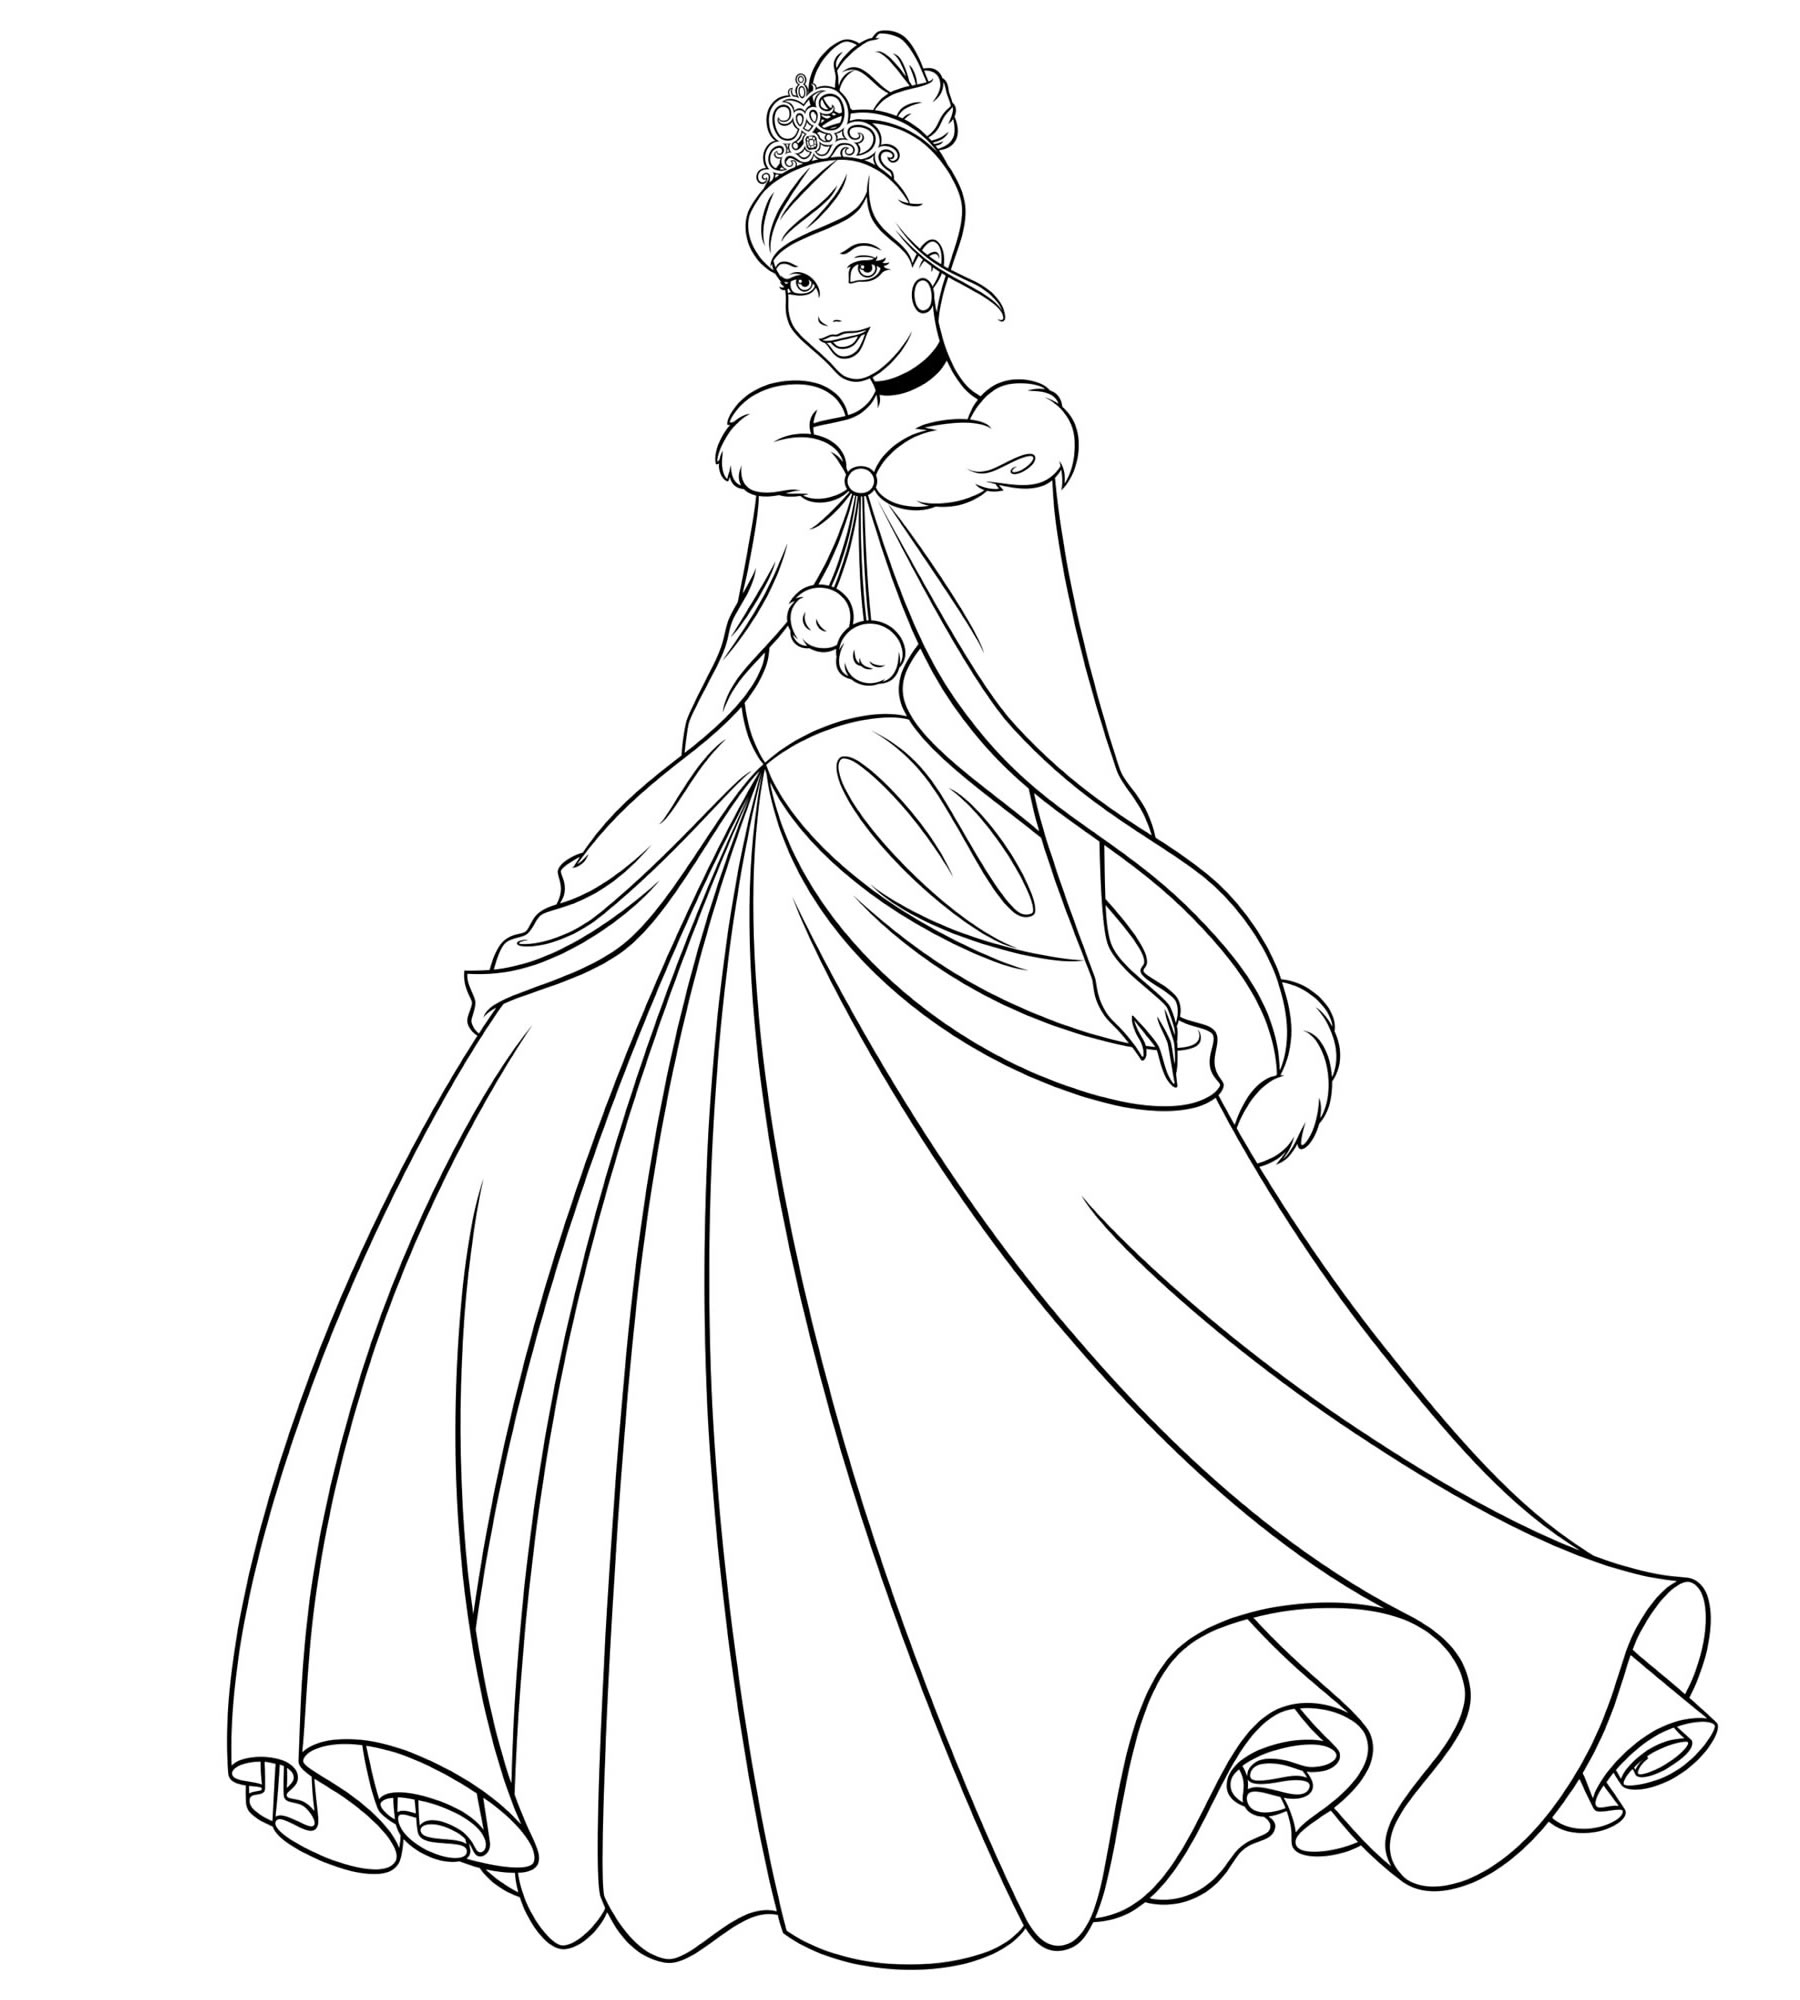 Раскраска Золушка принцесса убегает с бала - распечатать в хорошем качестве